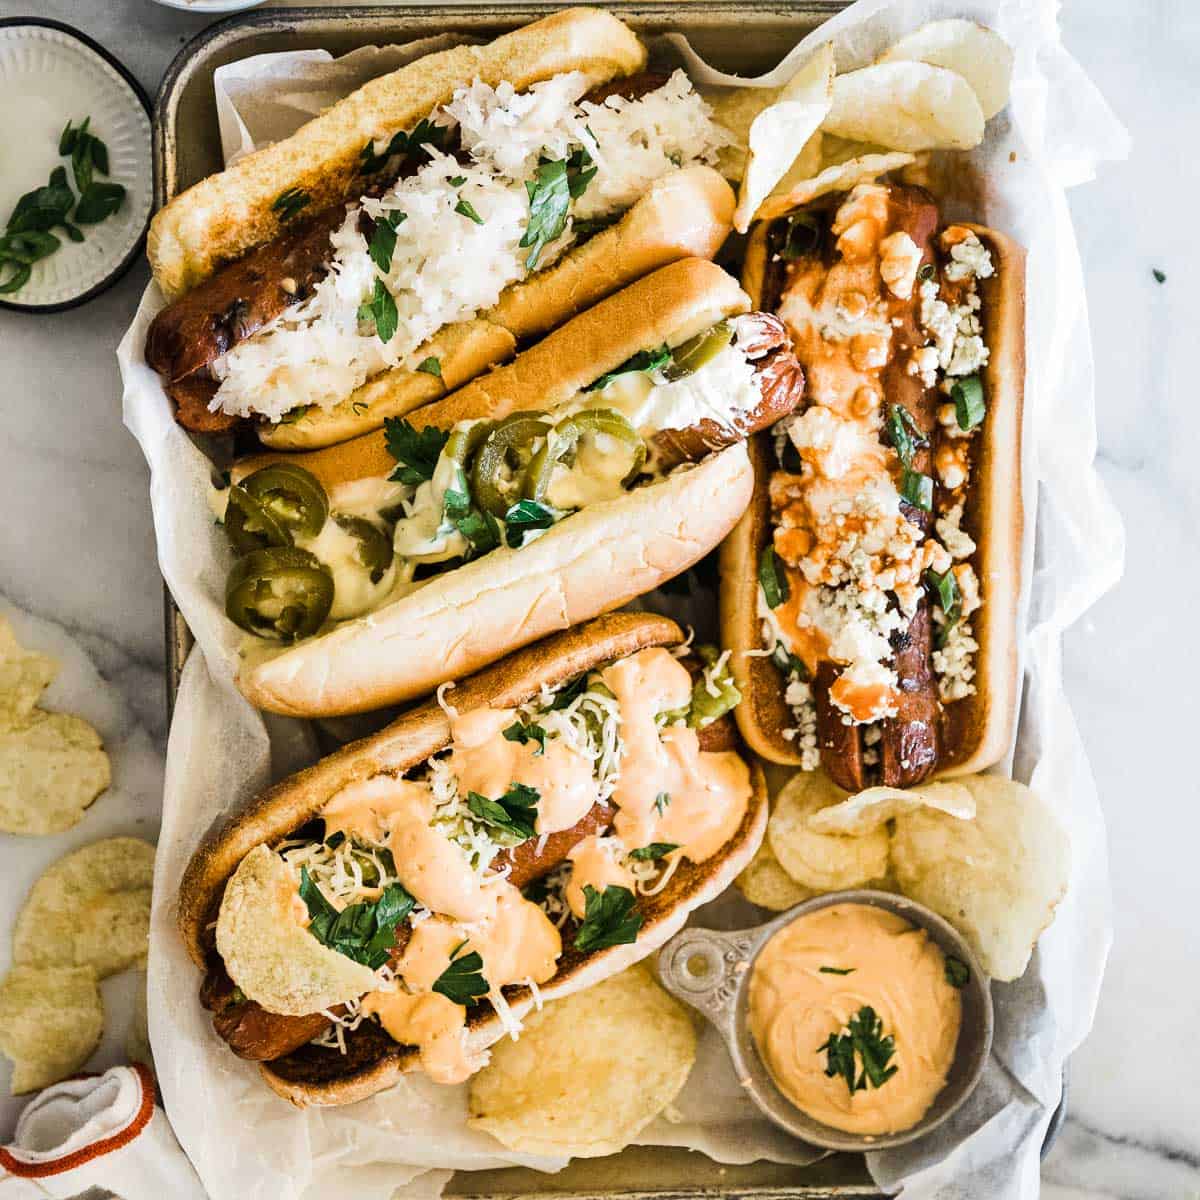 Hot Dog Bar - Oh So Delicioso